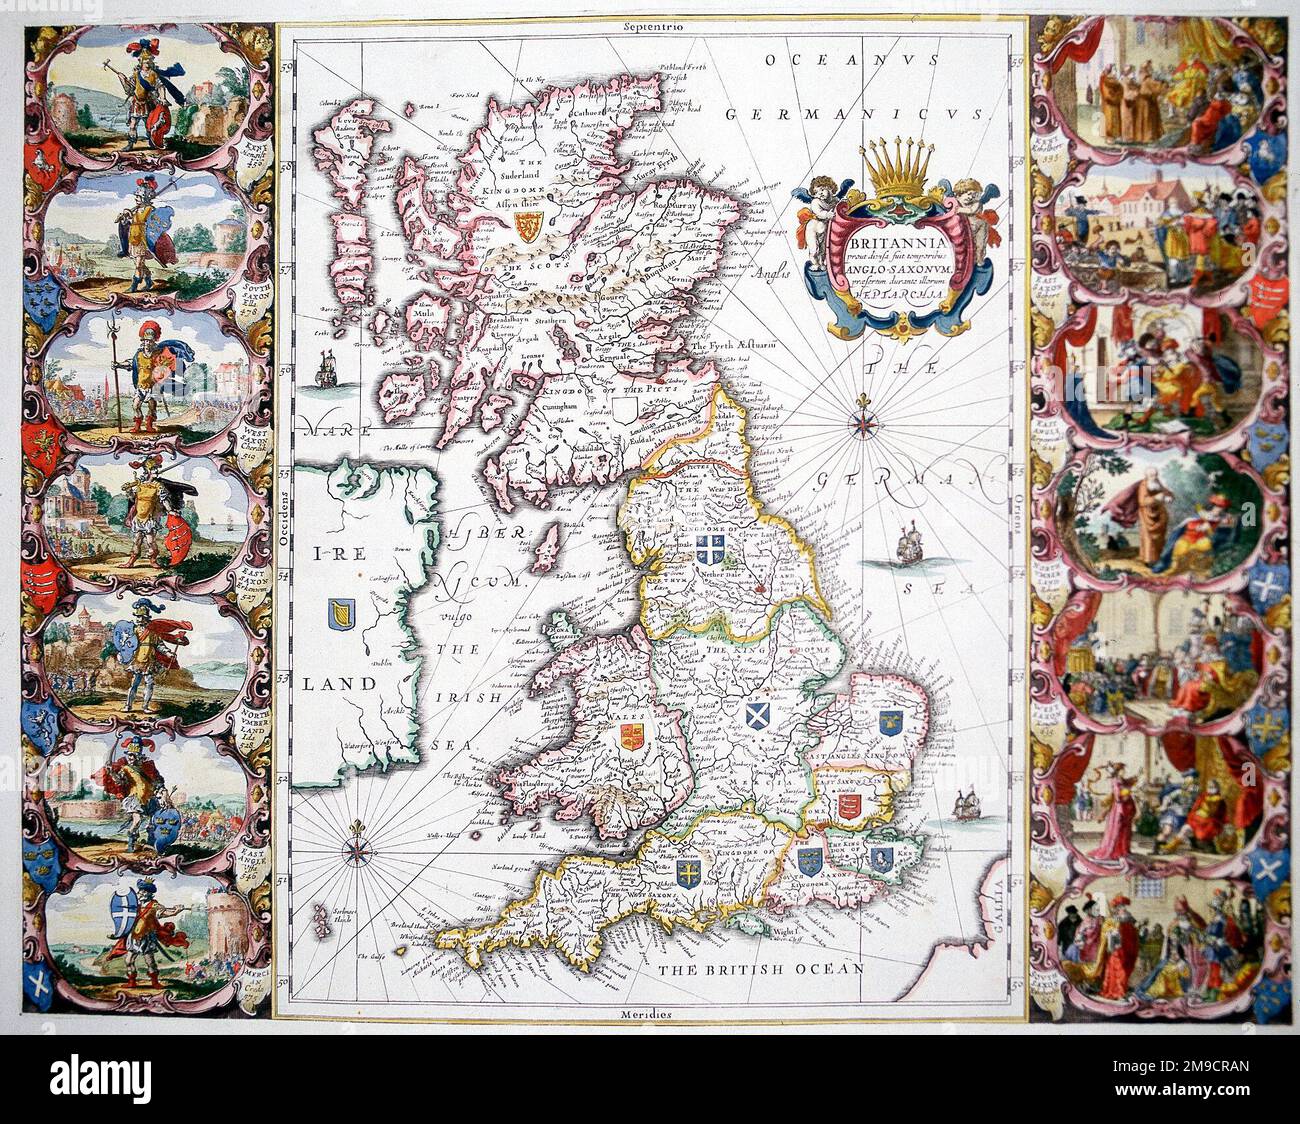 Mappa dell'Etrarchia, Regni anglosassoni della Gran Bretagna dell'alto Medioevo, Northumbria, Mercia, East Anglia, Essex, Kent, Sussex e Wessex. Foto Stock